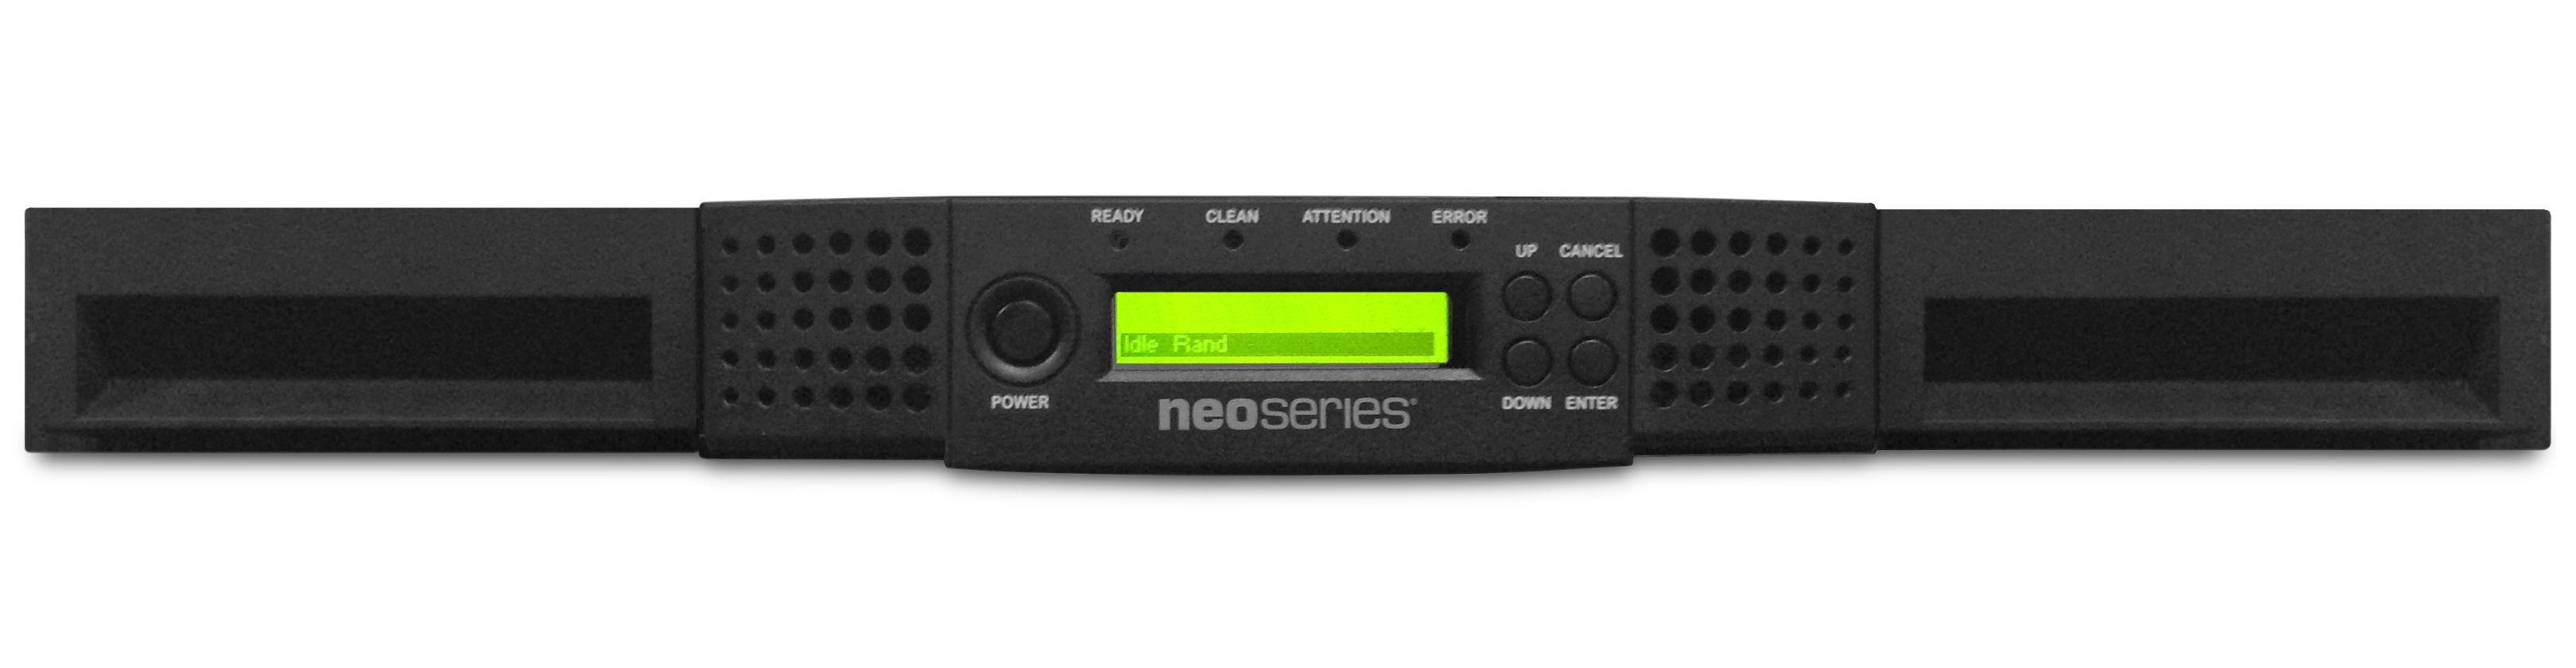 NEOs-storageloader